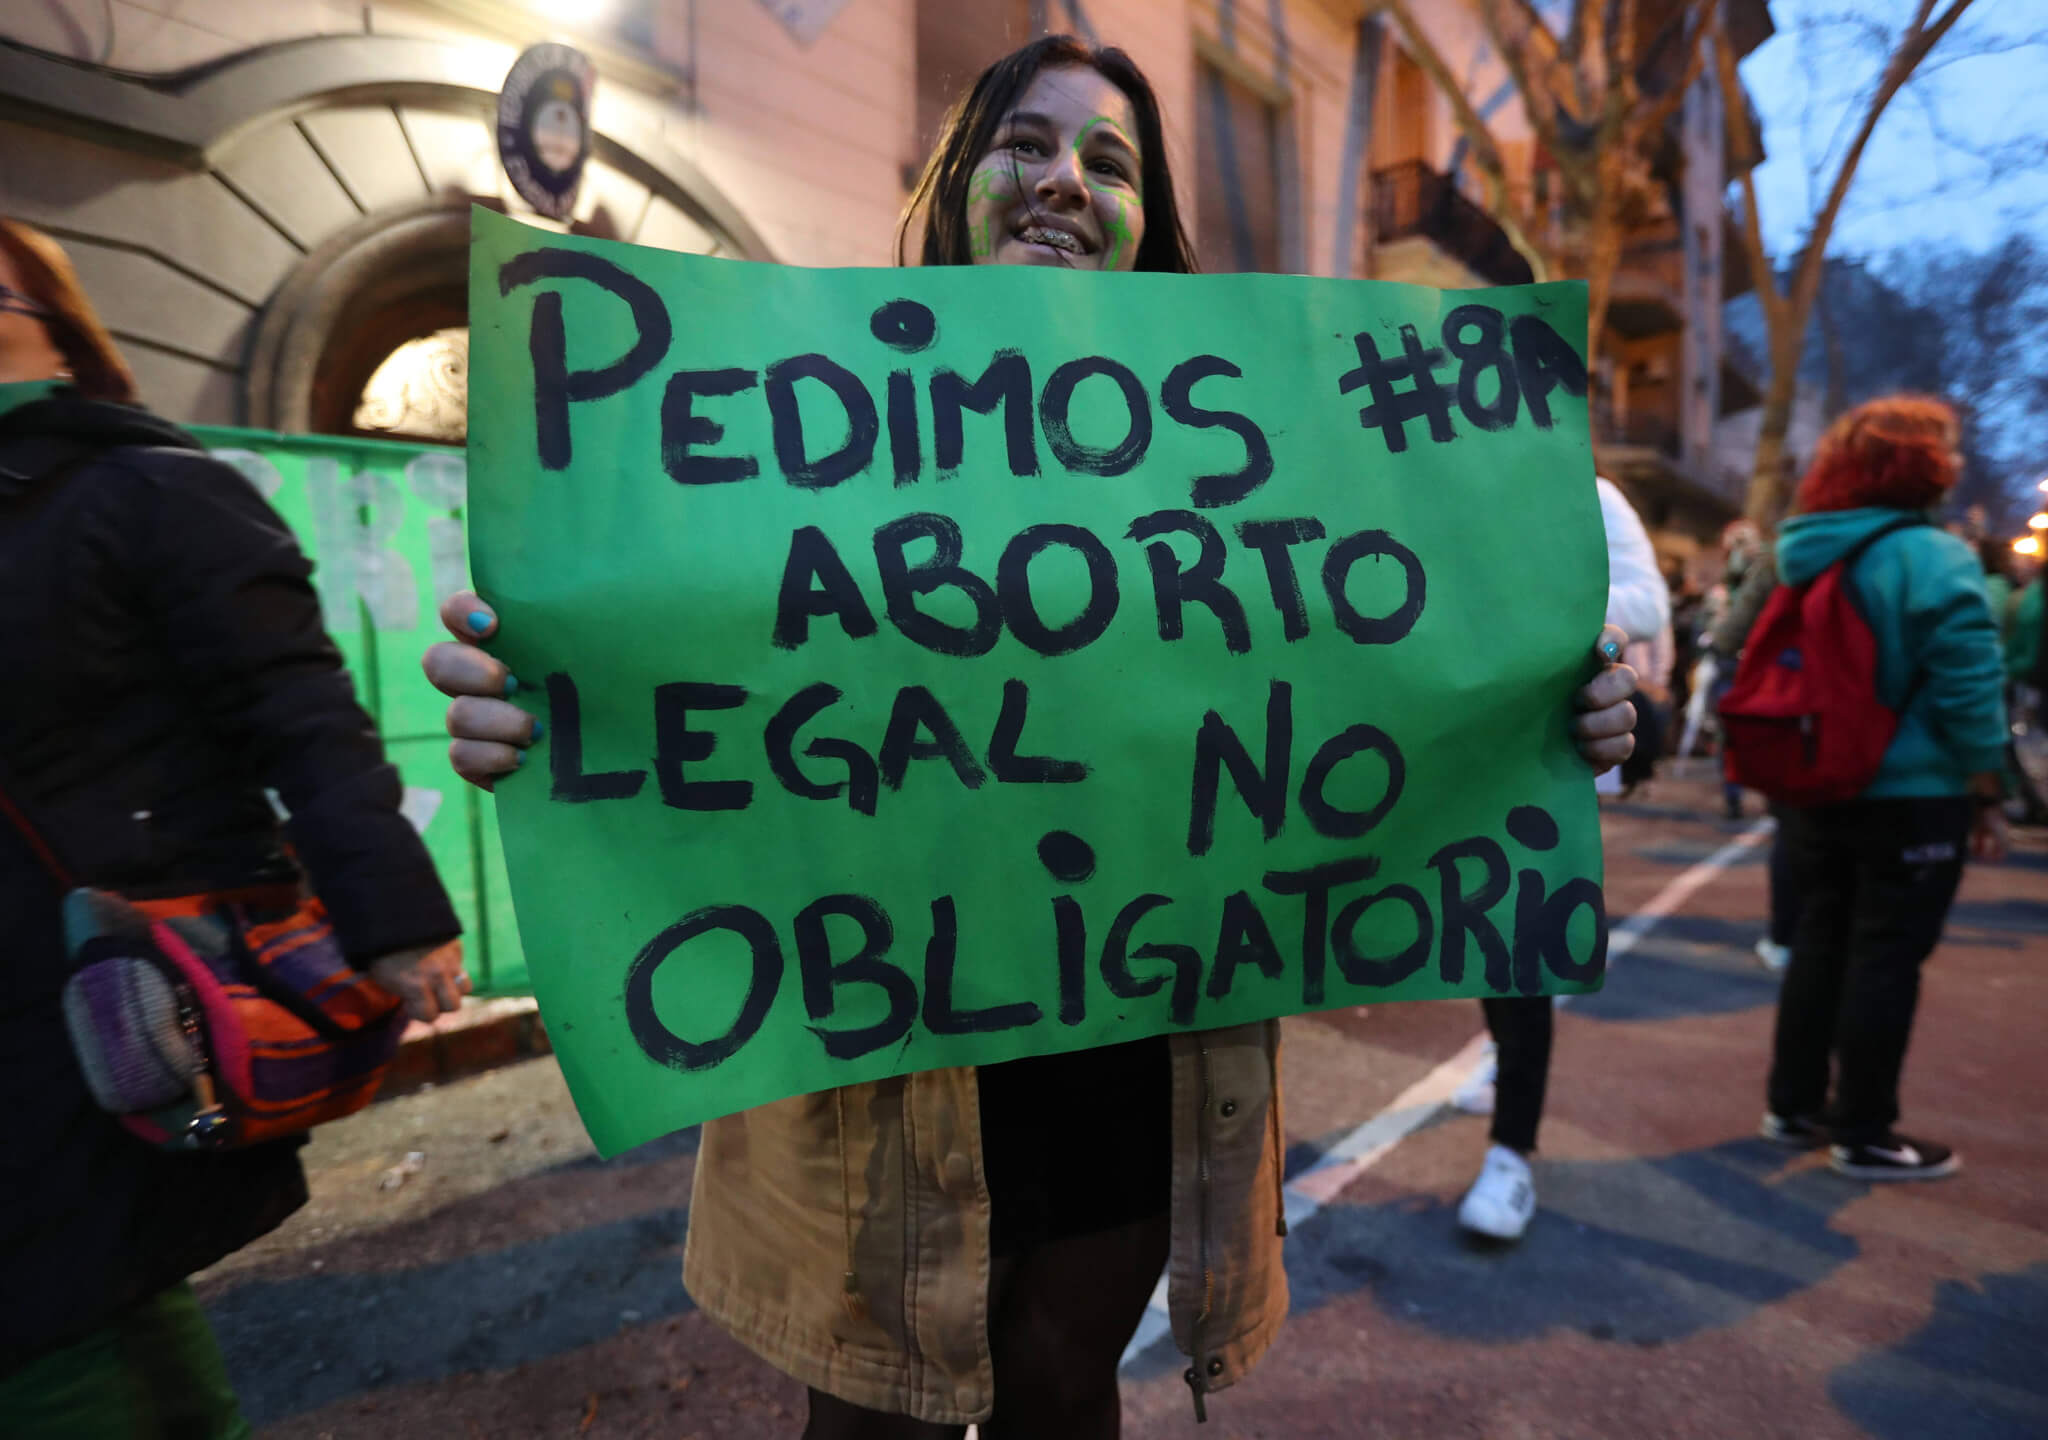 Aborto legal, no obligatorio